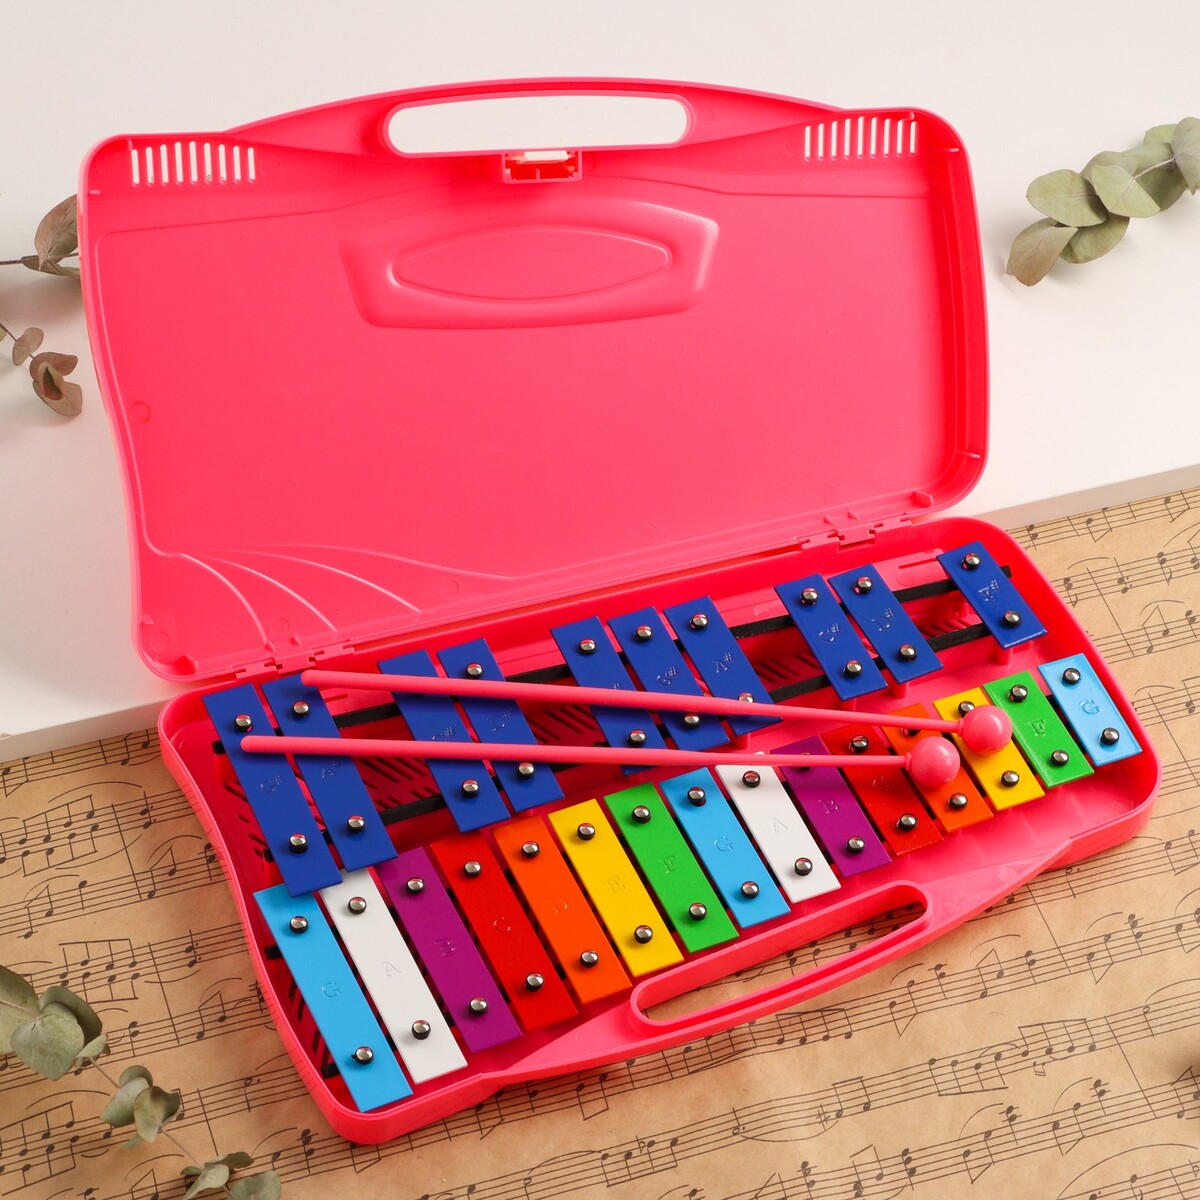 Музыкальный инструмент металлофон music life, 25 тонов, футляр, 2 палочки, розовый коврик музыкальный развивающий весёлые зверята розовый